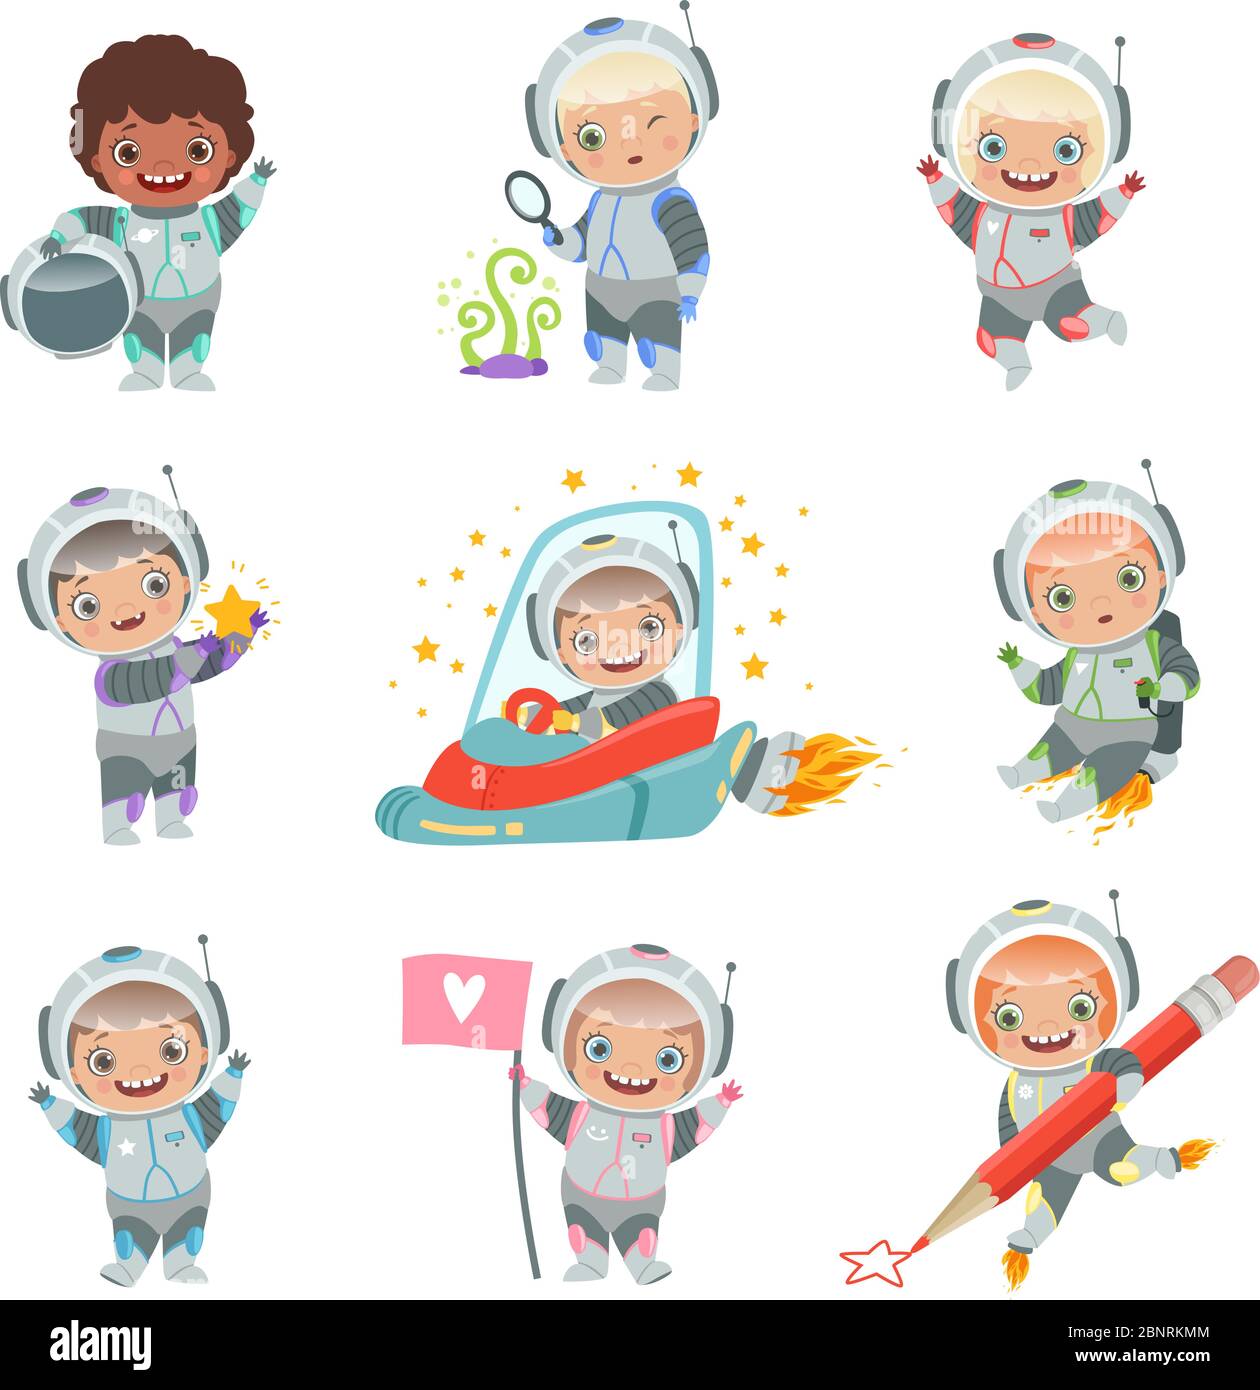 Enfants dans l'espace. Les astronautes enfants ont des personnages vectoriels amusants dans le cosmonaute de la fusée Illustration de Vecteur